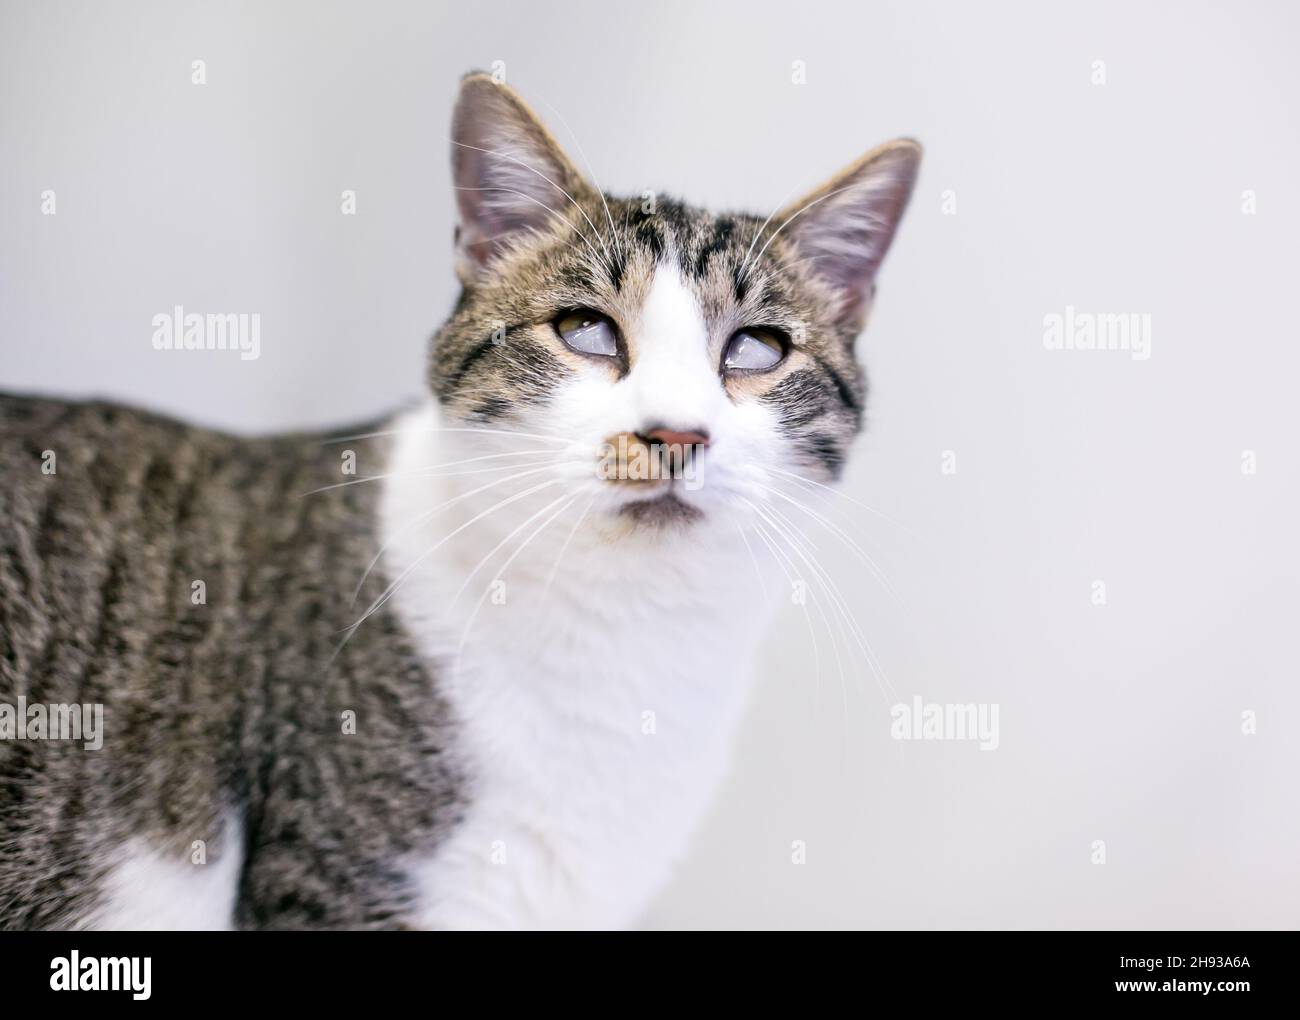 Un gato de shorthair con un caso grave de síndrome de Haw, donde los terceros párpados o las membranas que se mellan cubren ambos ojos Foto de stock